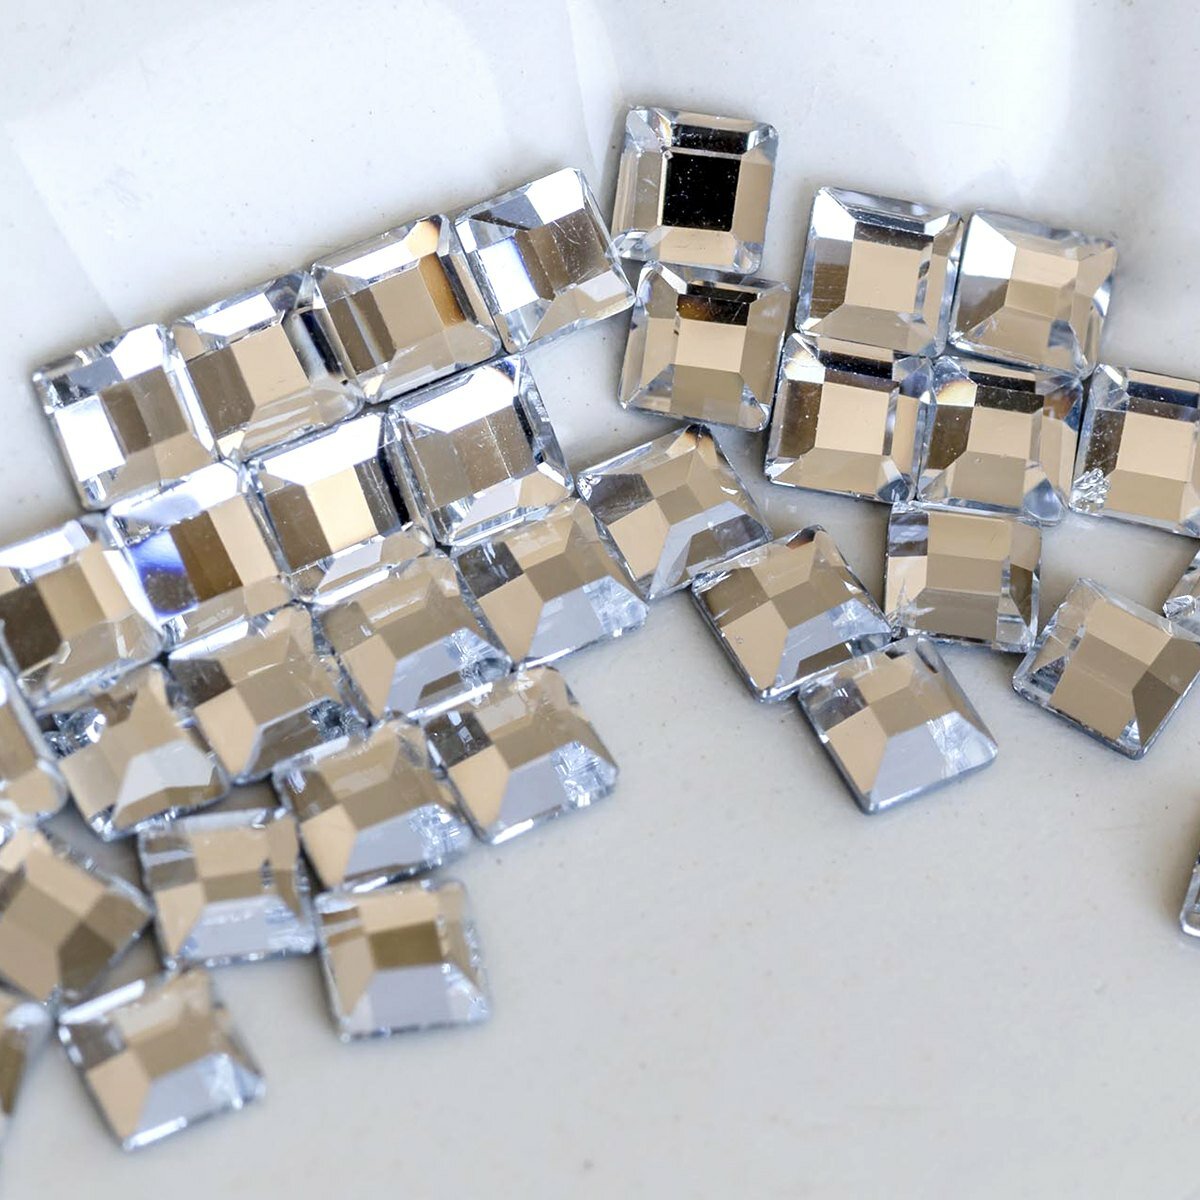 Стразы термоклеевые (упаковка 40 шт.) горячей фиксации/Термостразы, форма Square, цвет Cristal прозрачный, размер 4х4 мм